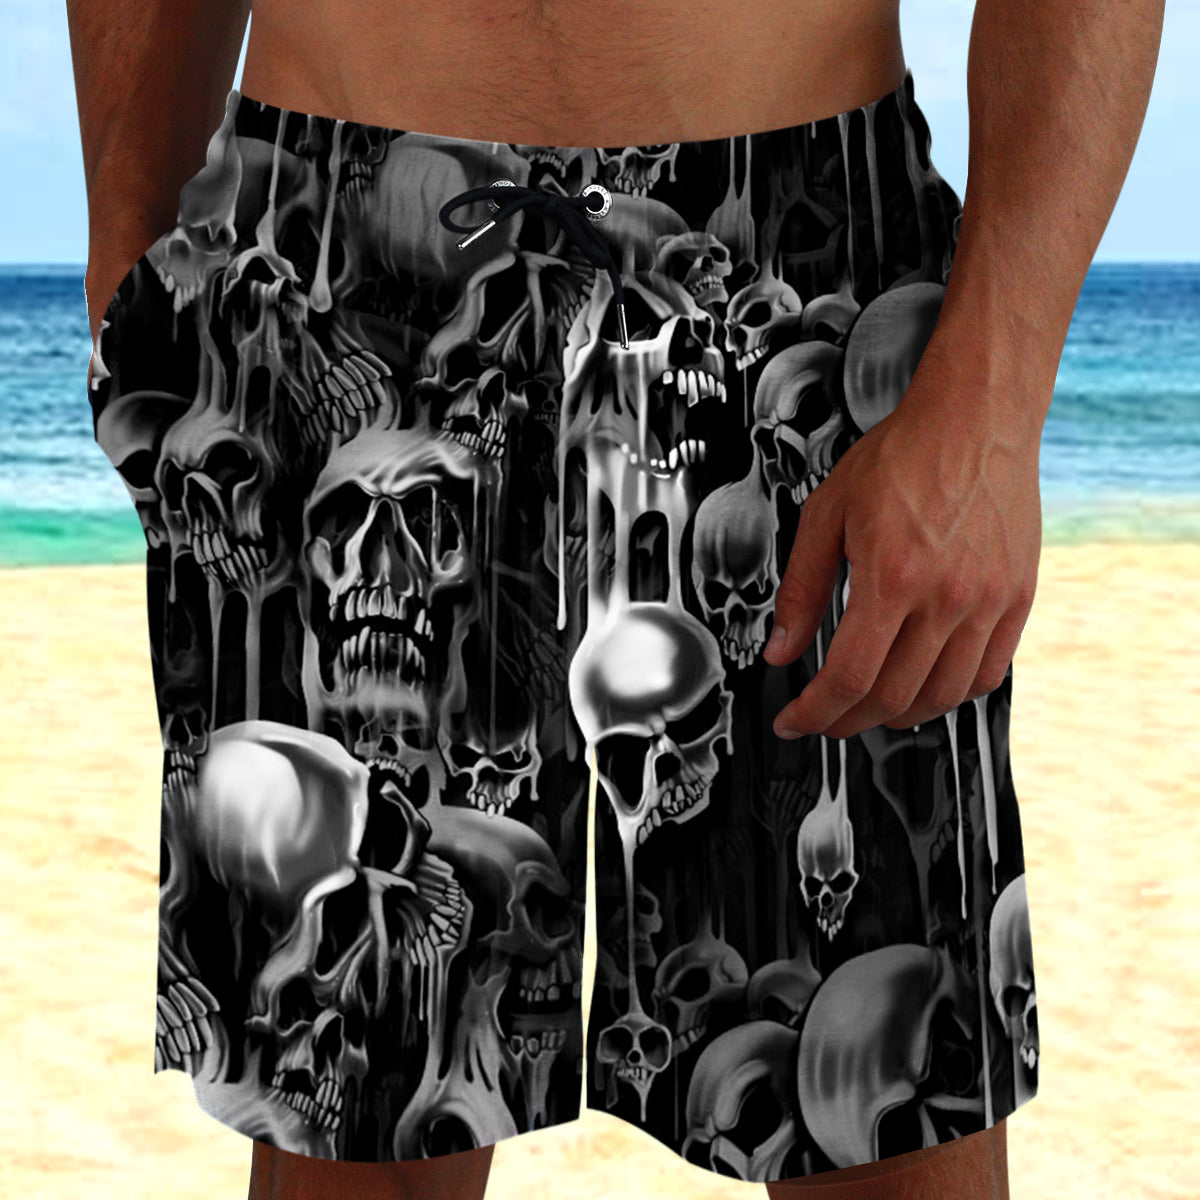 Melting Skull Combo Beach Shorts and Hawaii Shirts 08715